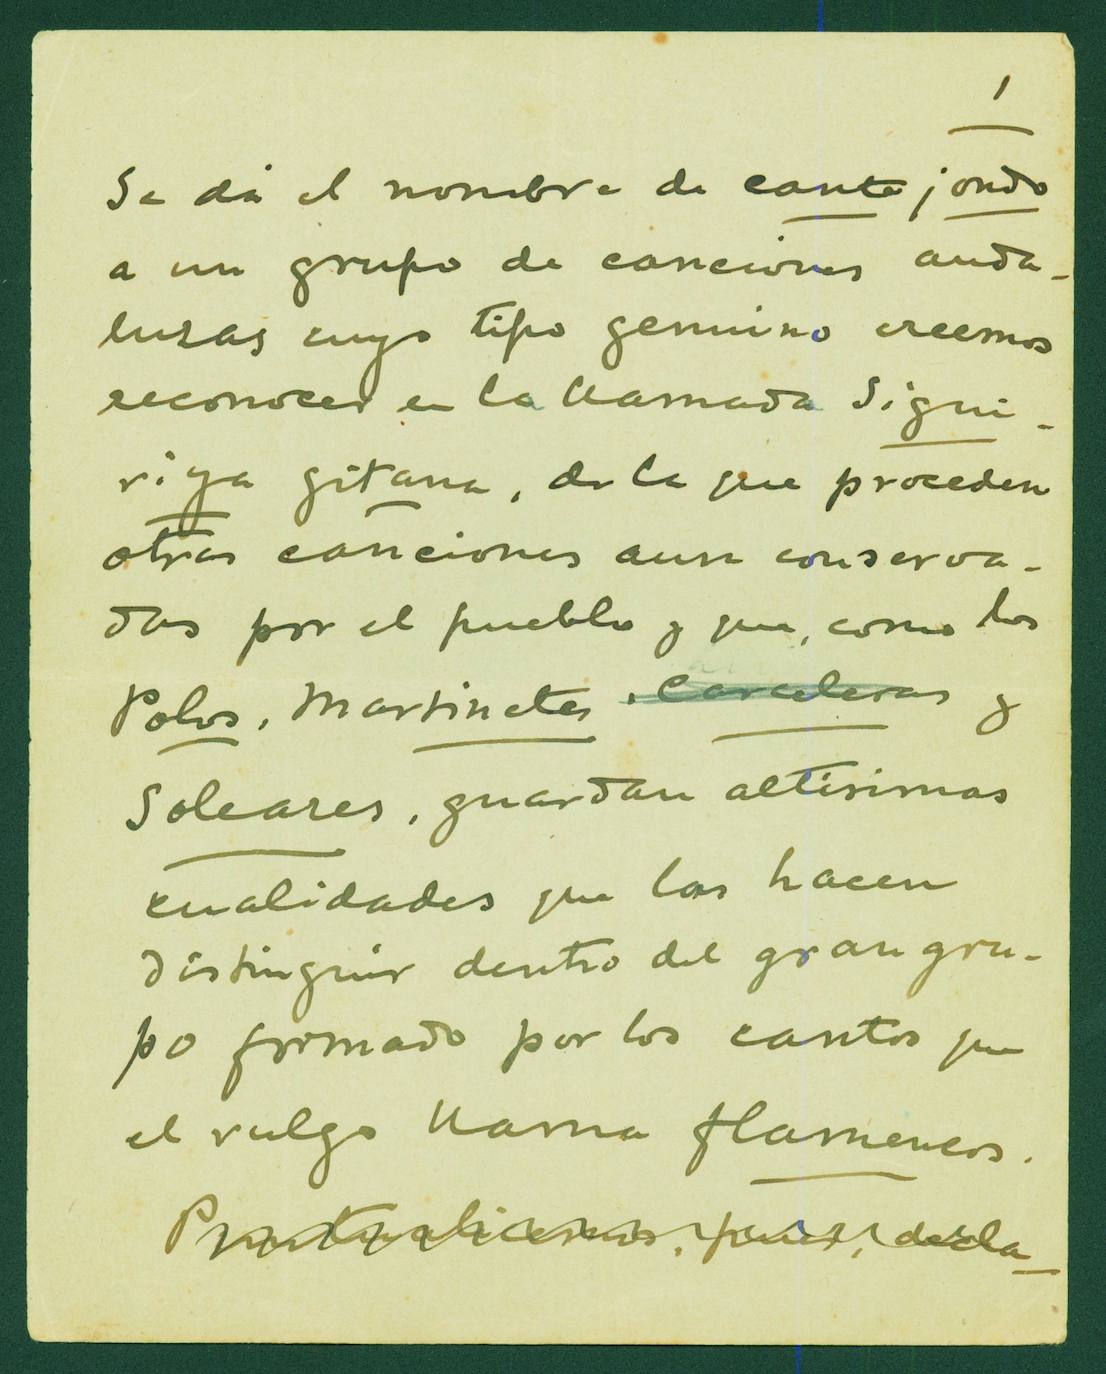 La definición del cante jondo, según el manuscrito de Falla.